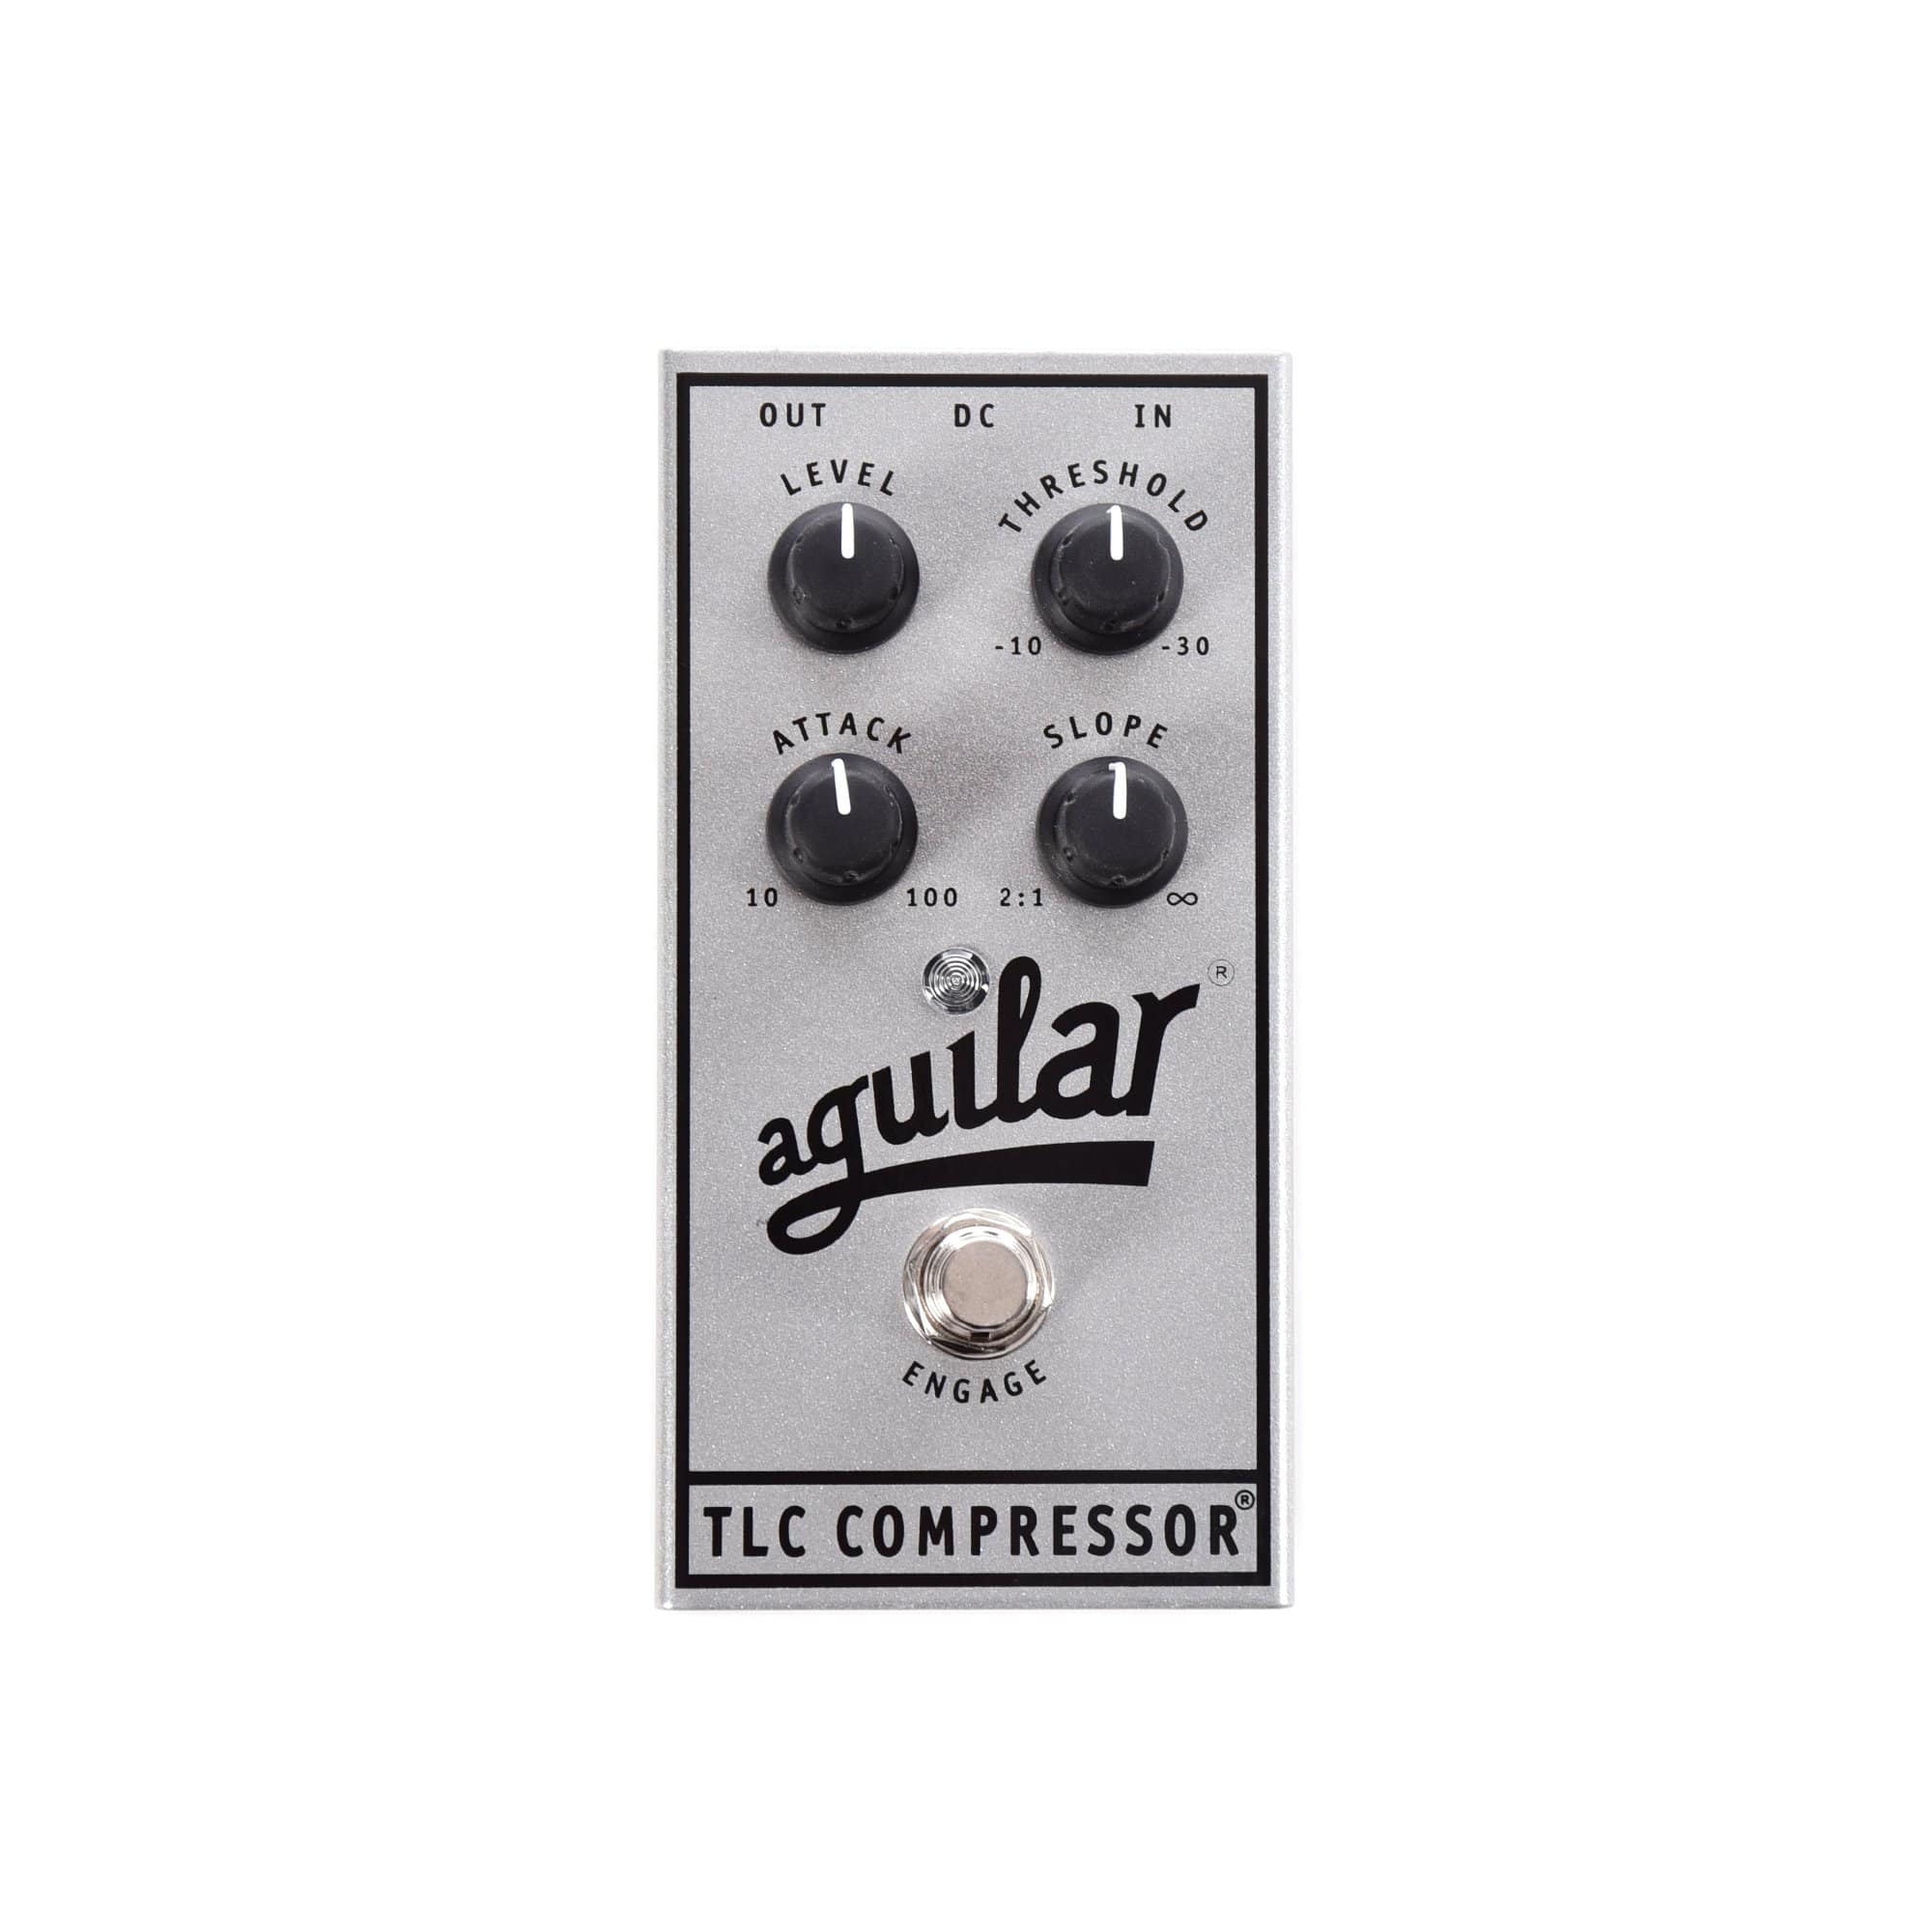 Aguilar 25th Silver Anniversary Edition TLC Compressor